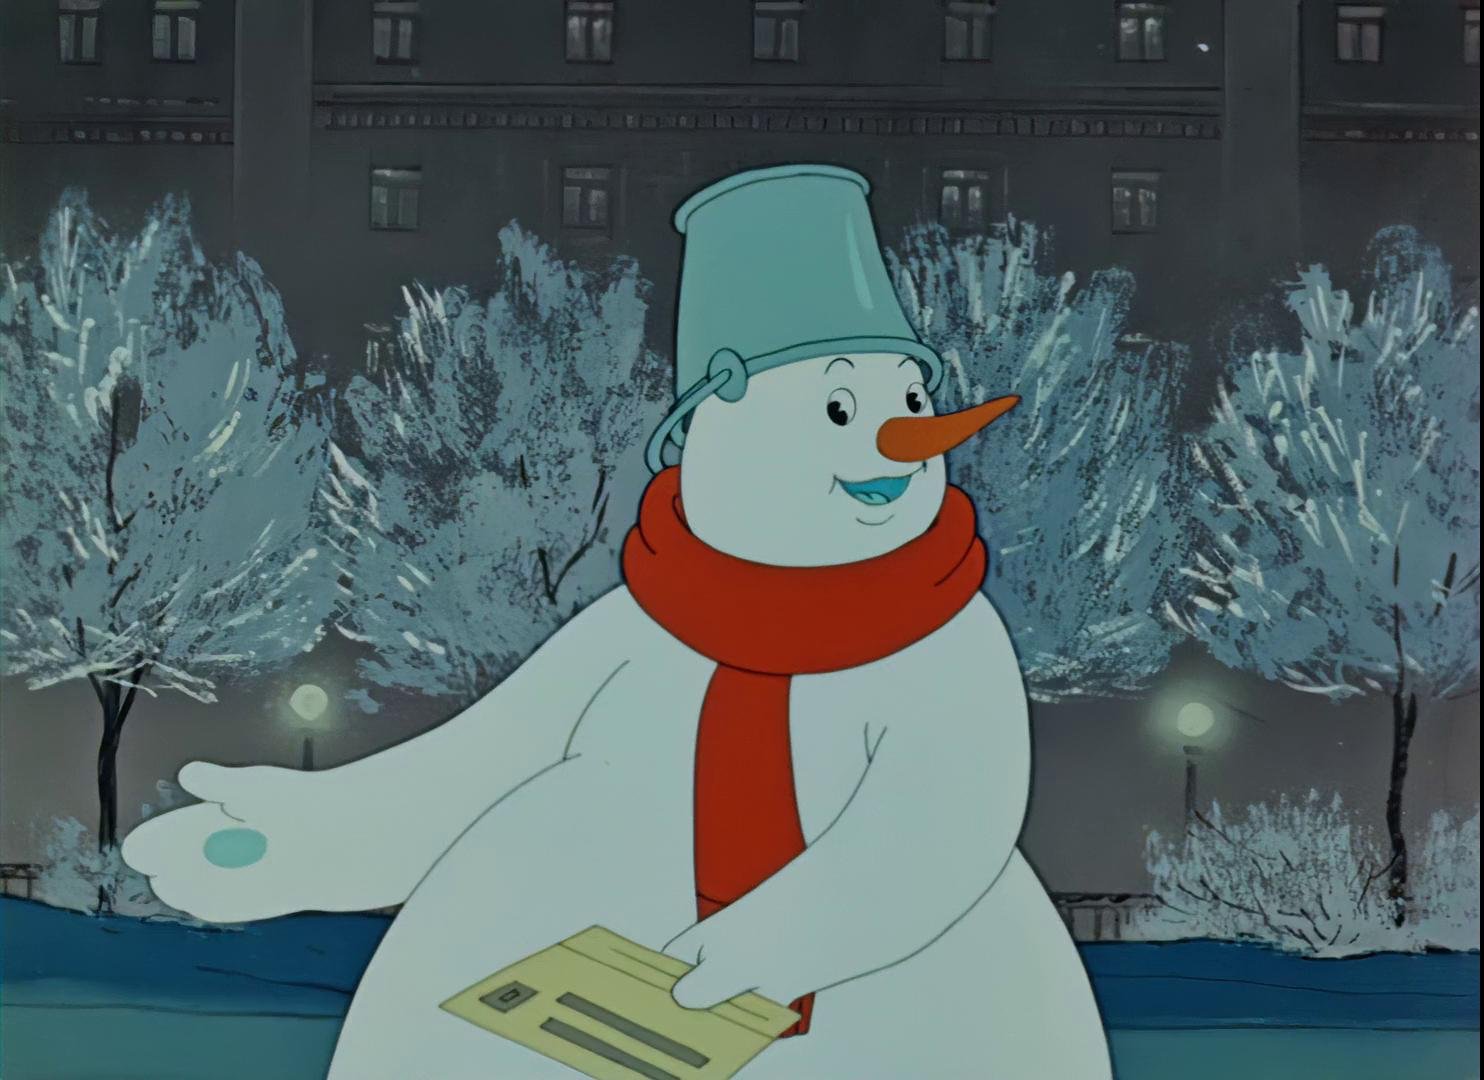 Снеговик-почтовик (1955)